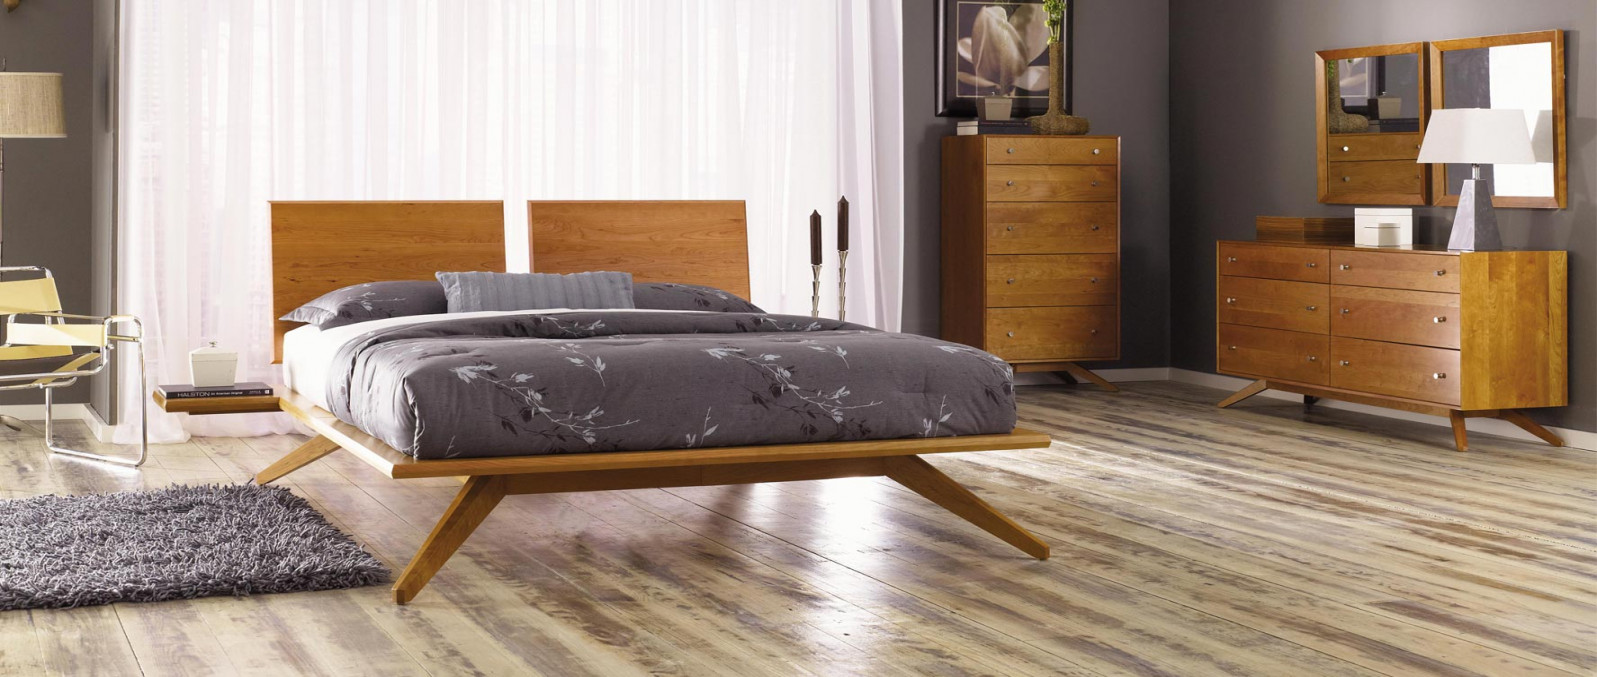 Mid-Century Modern Bedroom Furniture - Vermont Woods Studios